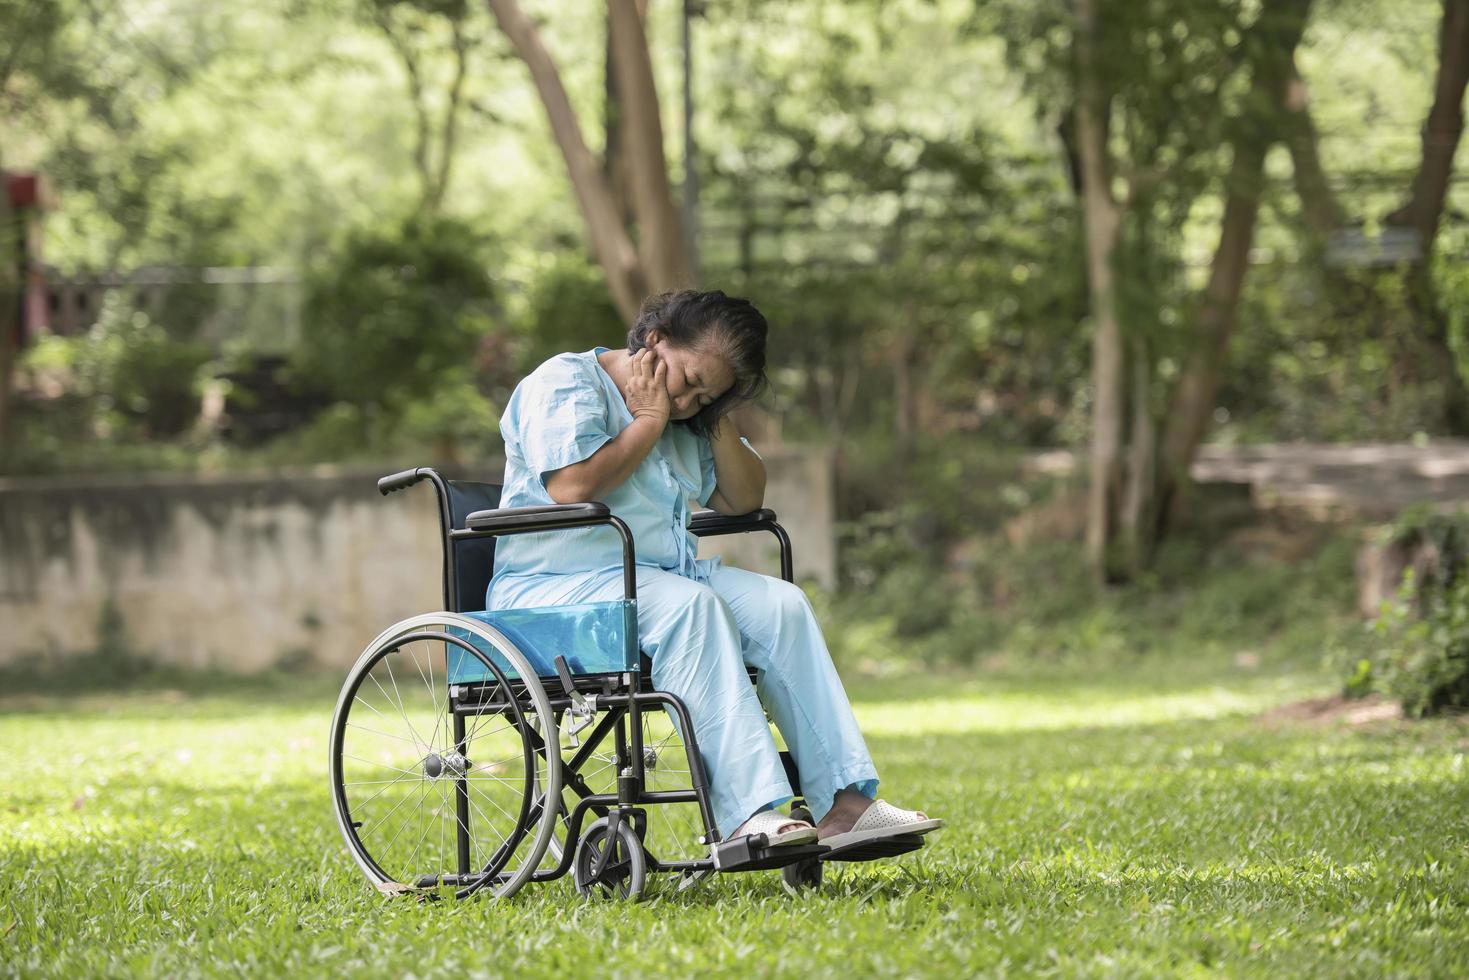 donna anziana solitaria seduta triste sensazione sulla sedia a rotelle in giardino foto